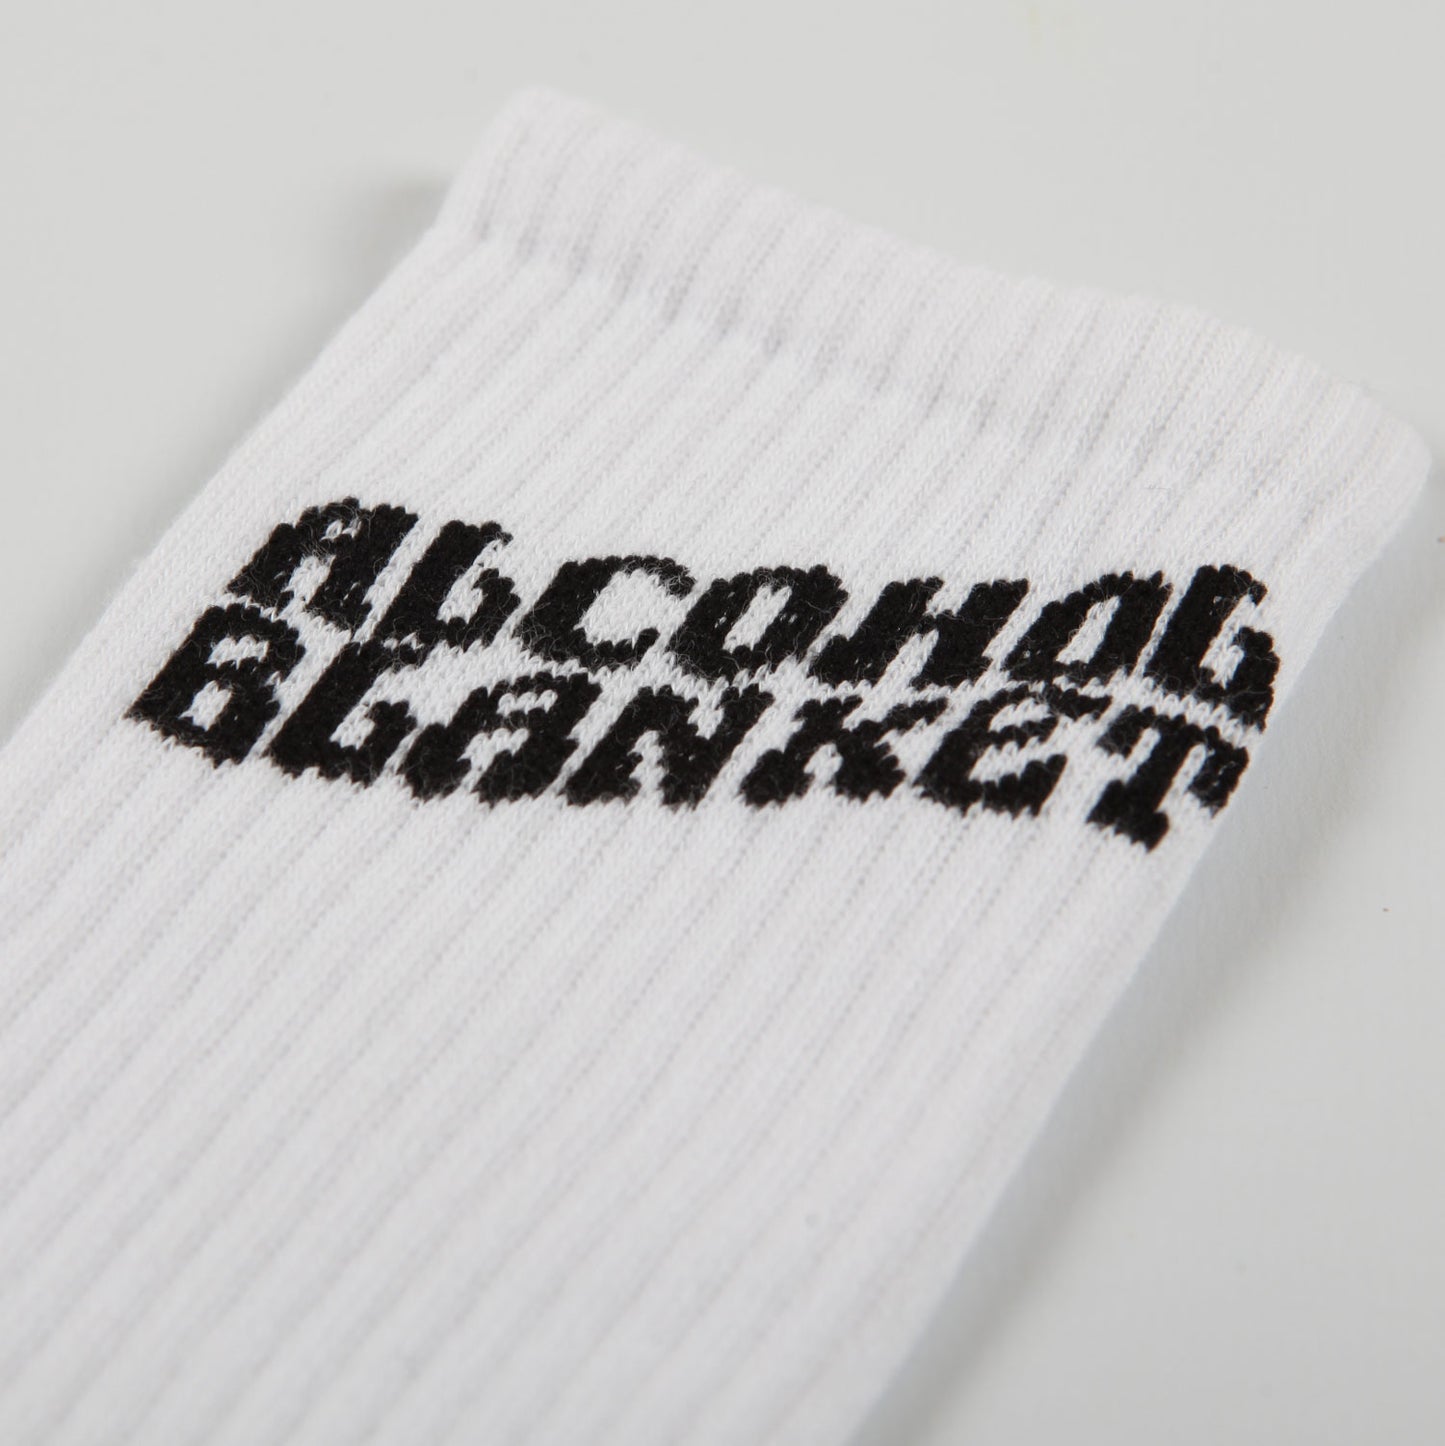 Alcohol Blanket 'Logo' Socks (White)